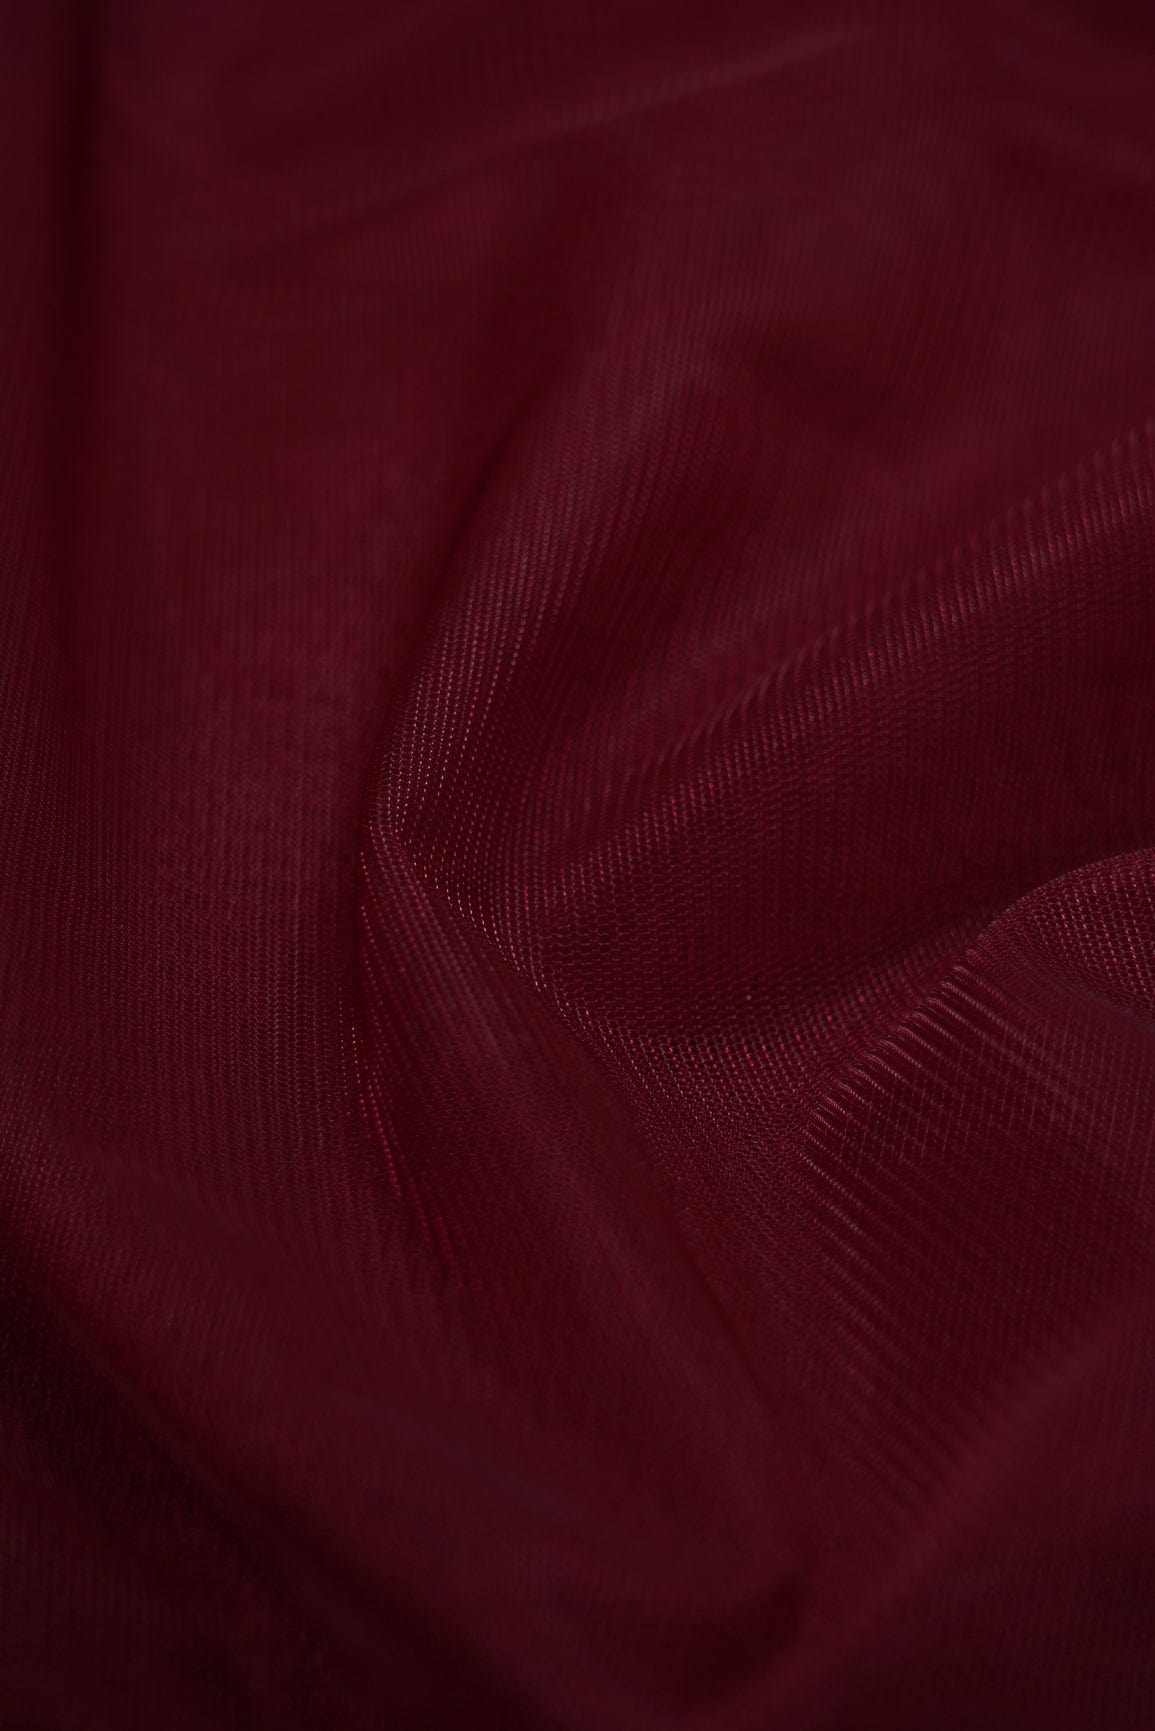 doeraa Plain Fabrics Maroon Dyed Soft Net